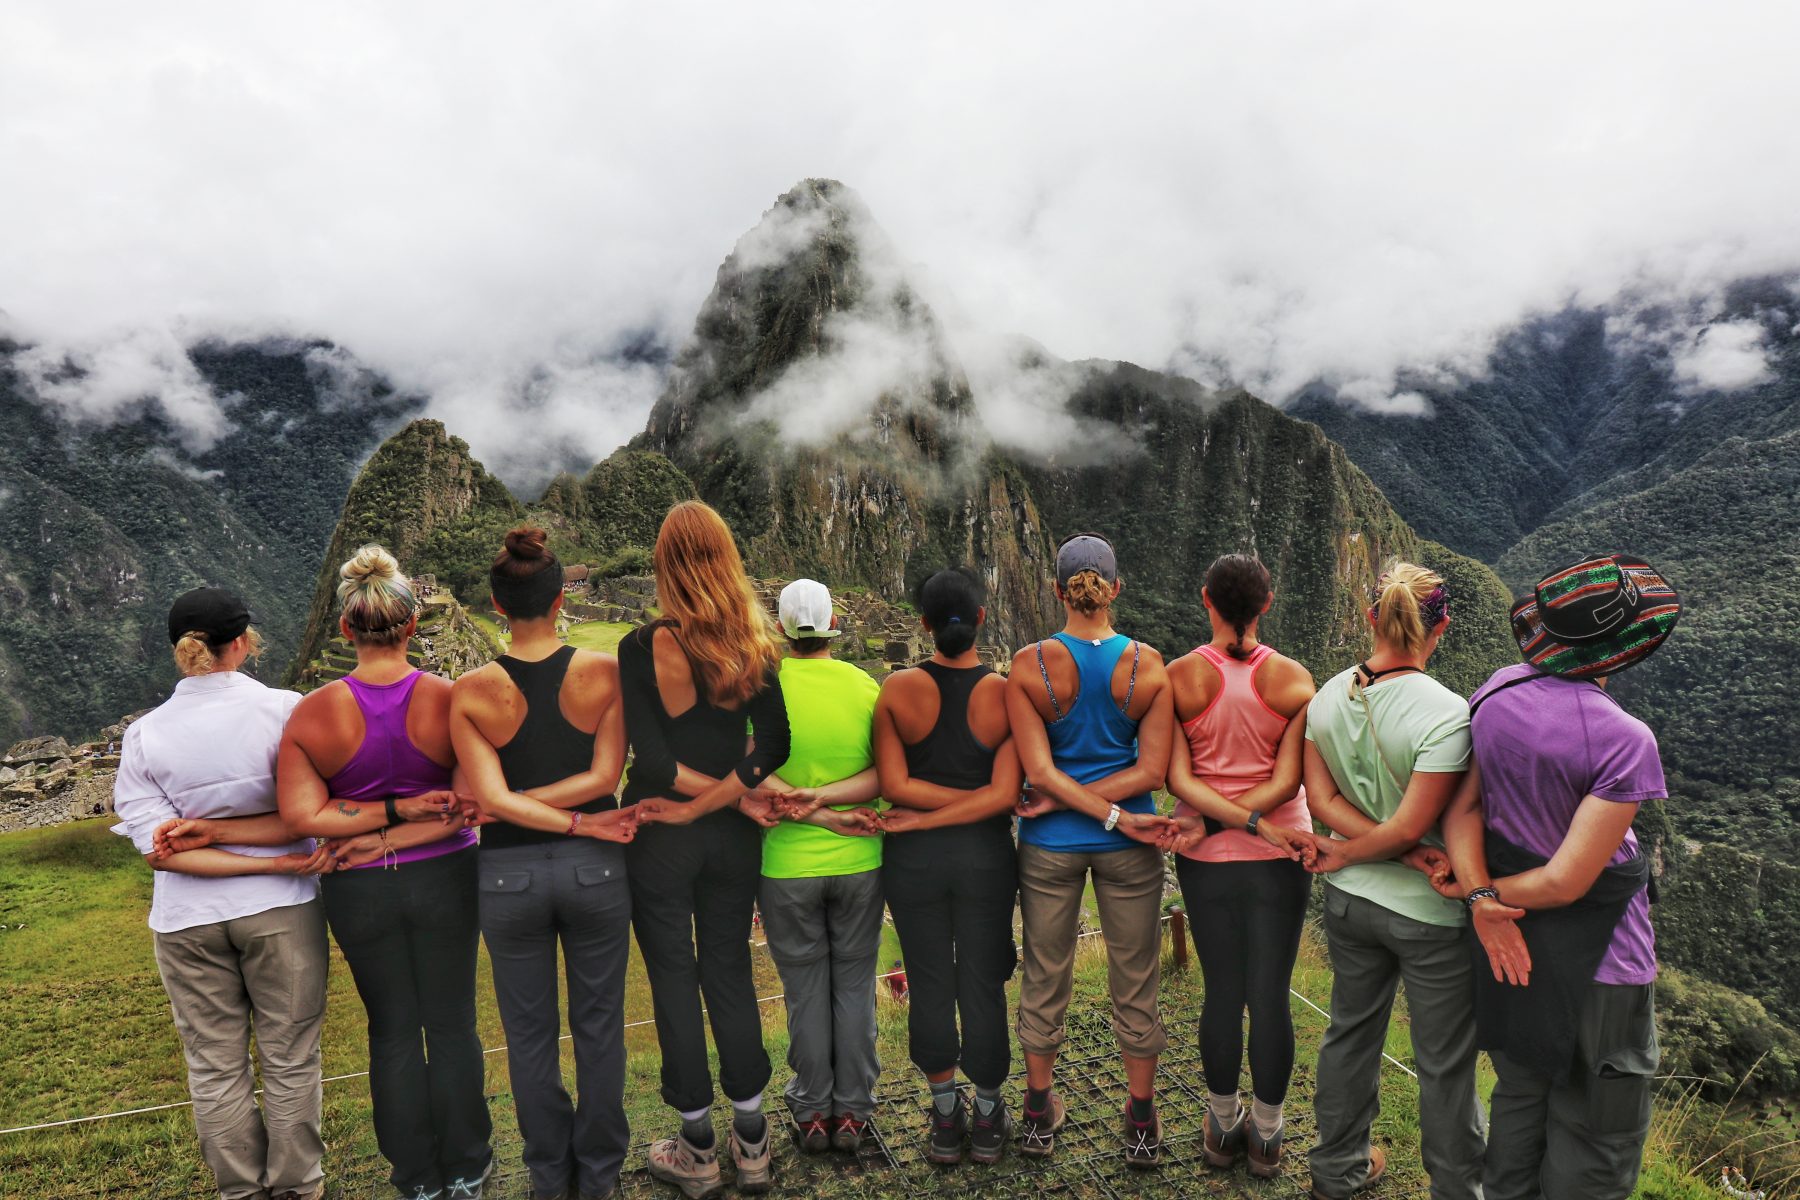 Inca Jungle trek – Machu Picchu 4D/3N